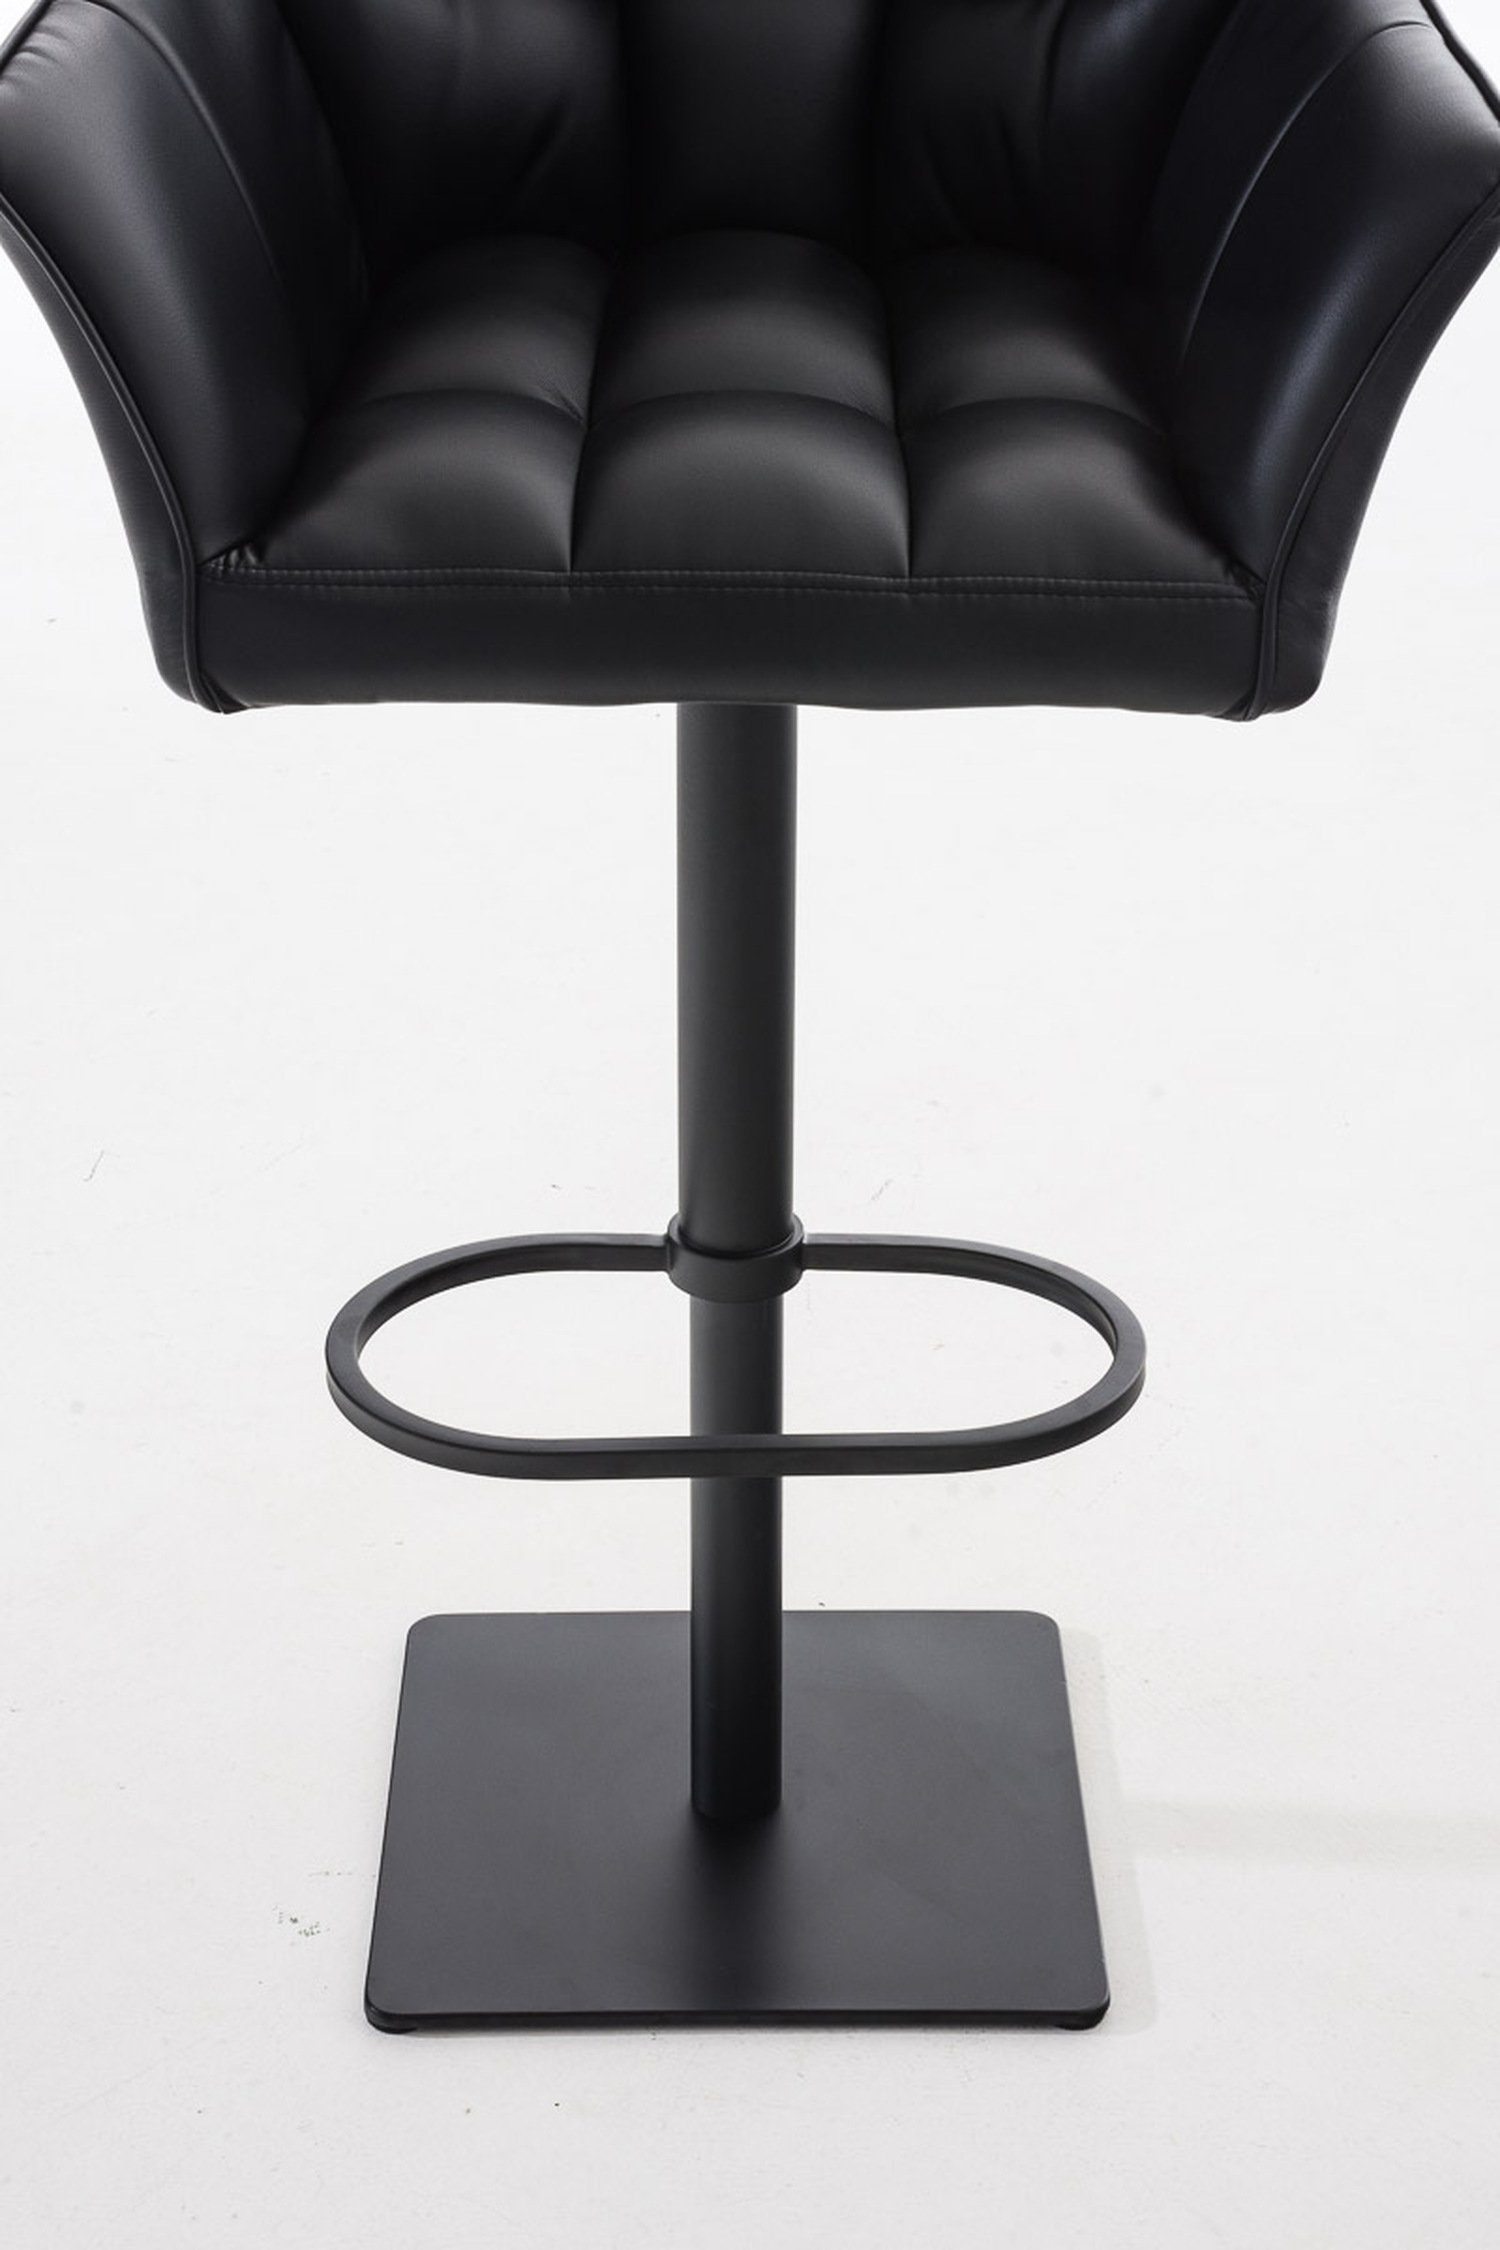 matt - - TPFLiving - Sitzfläche: Küche), & Schwarz Metall Fußstütze und für Damaso Kunstleder Theke Barhocker drehbar schwarz Hocker 360° (mit Rückenlehne